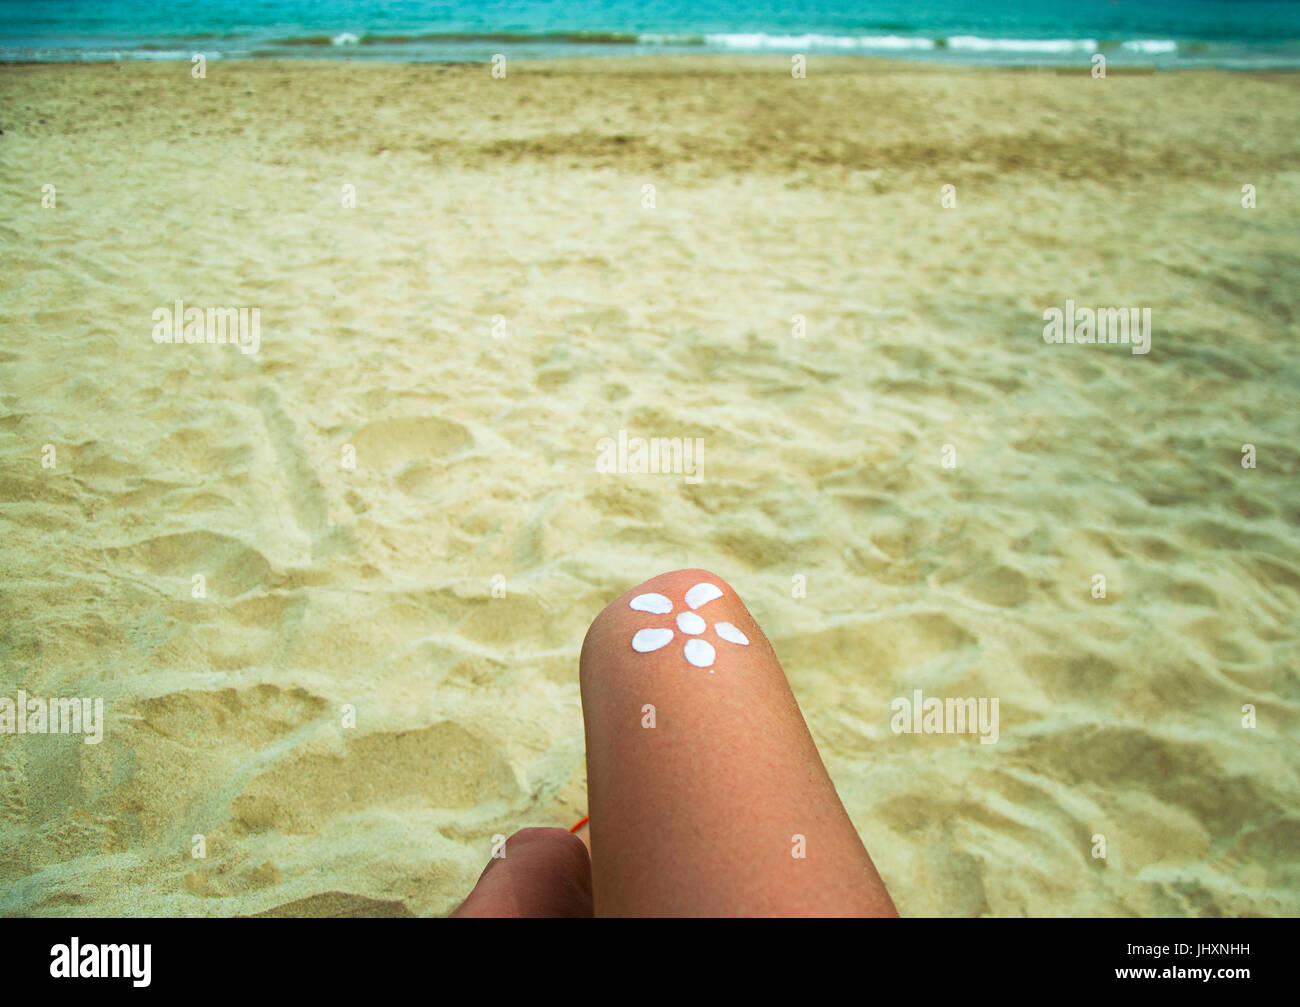 Beine eines Mädchens am Strand Liegestuhl am Meer liegen. Die Sonne,  sonnenverbrannte Haut des Fußes mit Sonnencreme aufgemalt Stockfotografie -  Alamy